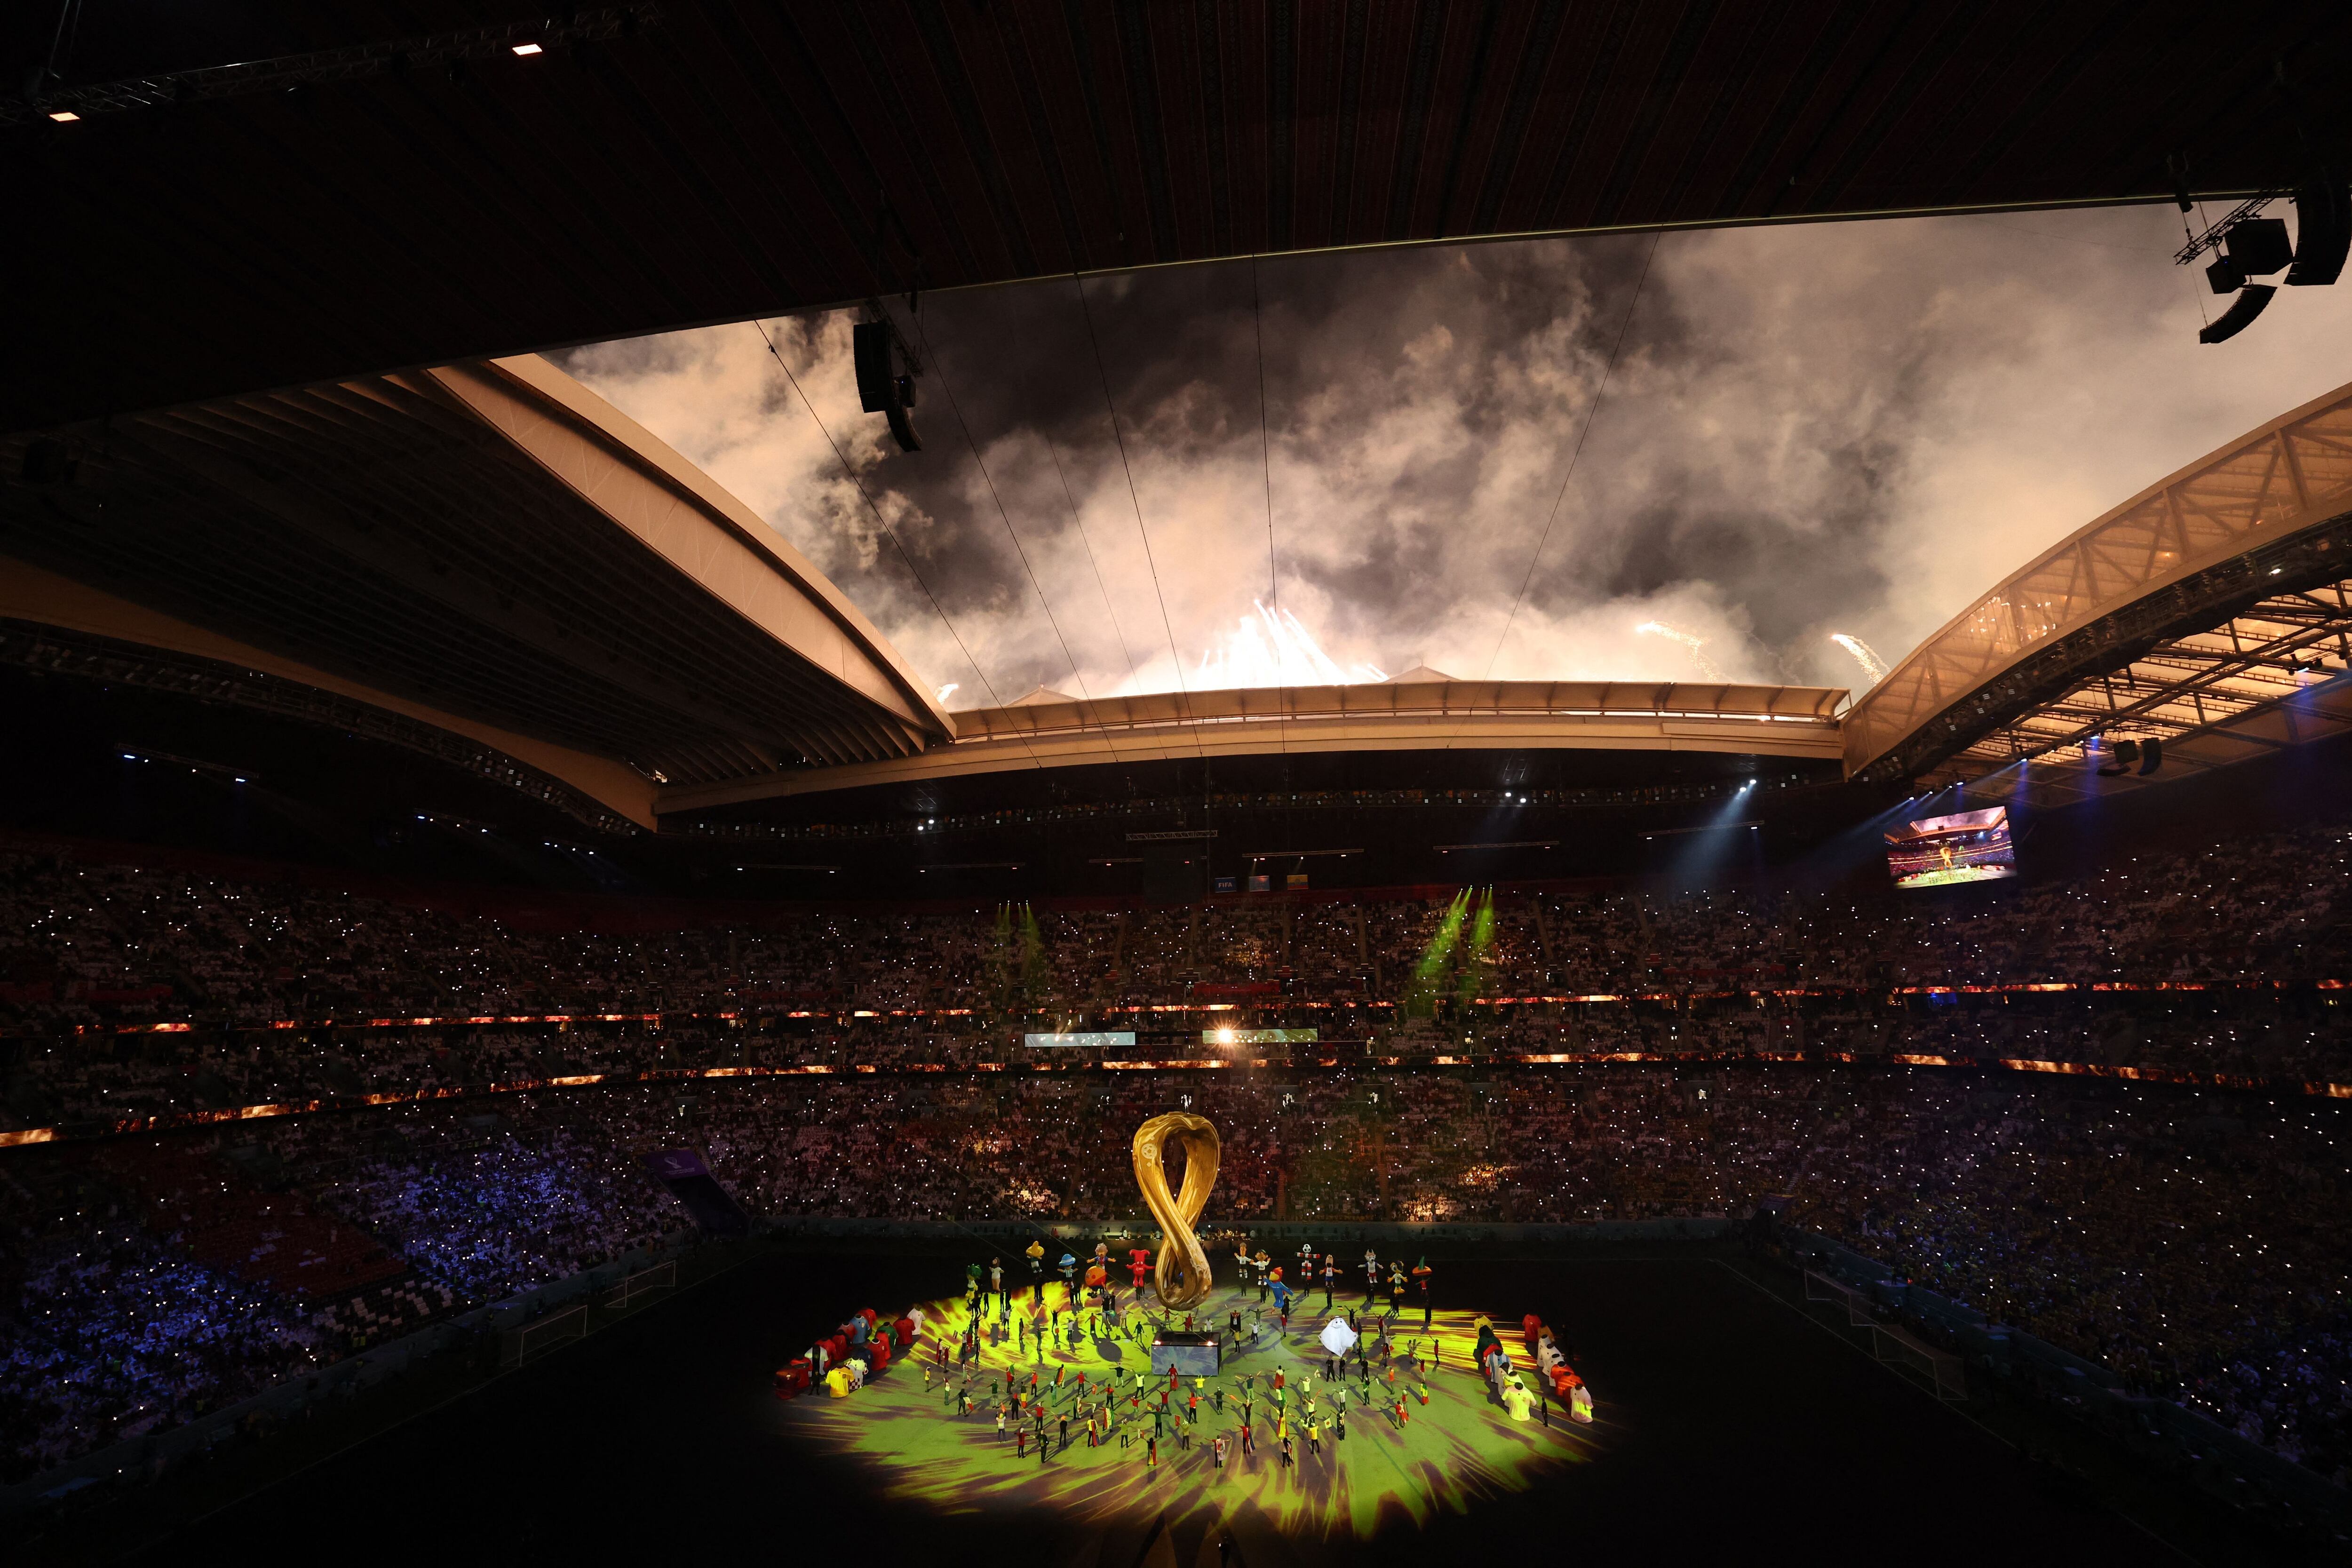 Arrancó la Copa del Mundo FIFA con una nostálgica, pero relativamente corta ceremonia de inauguración.(REUTERS/Molly Darlington)